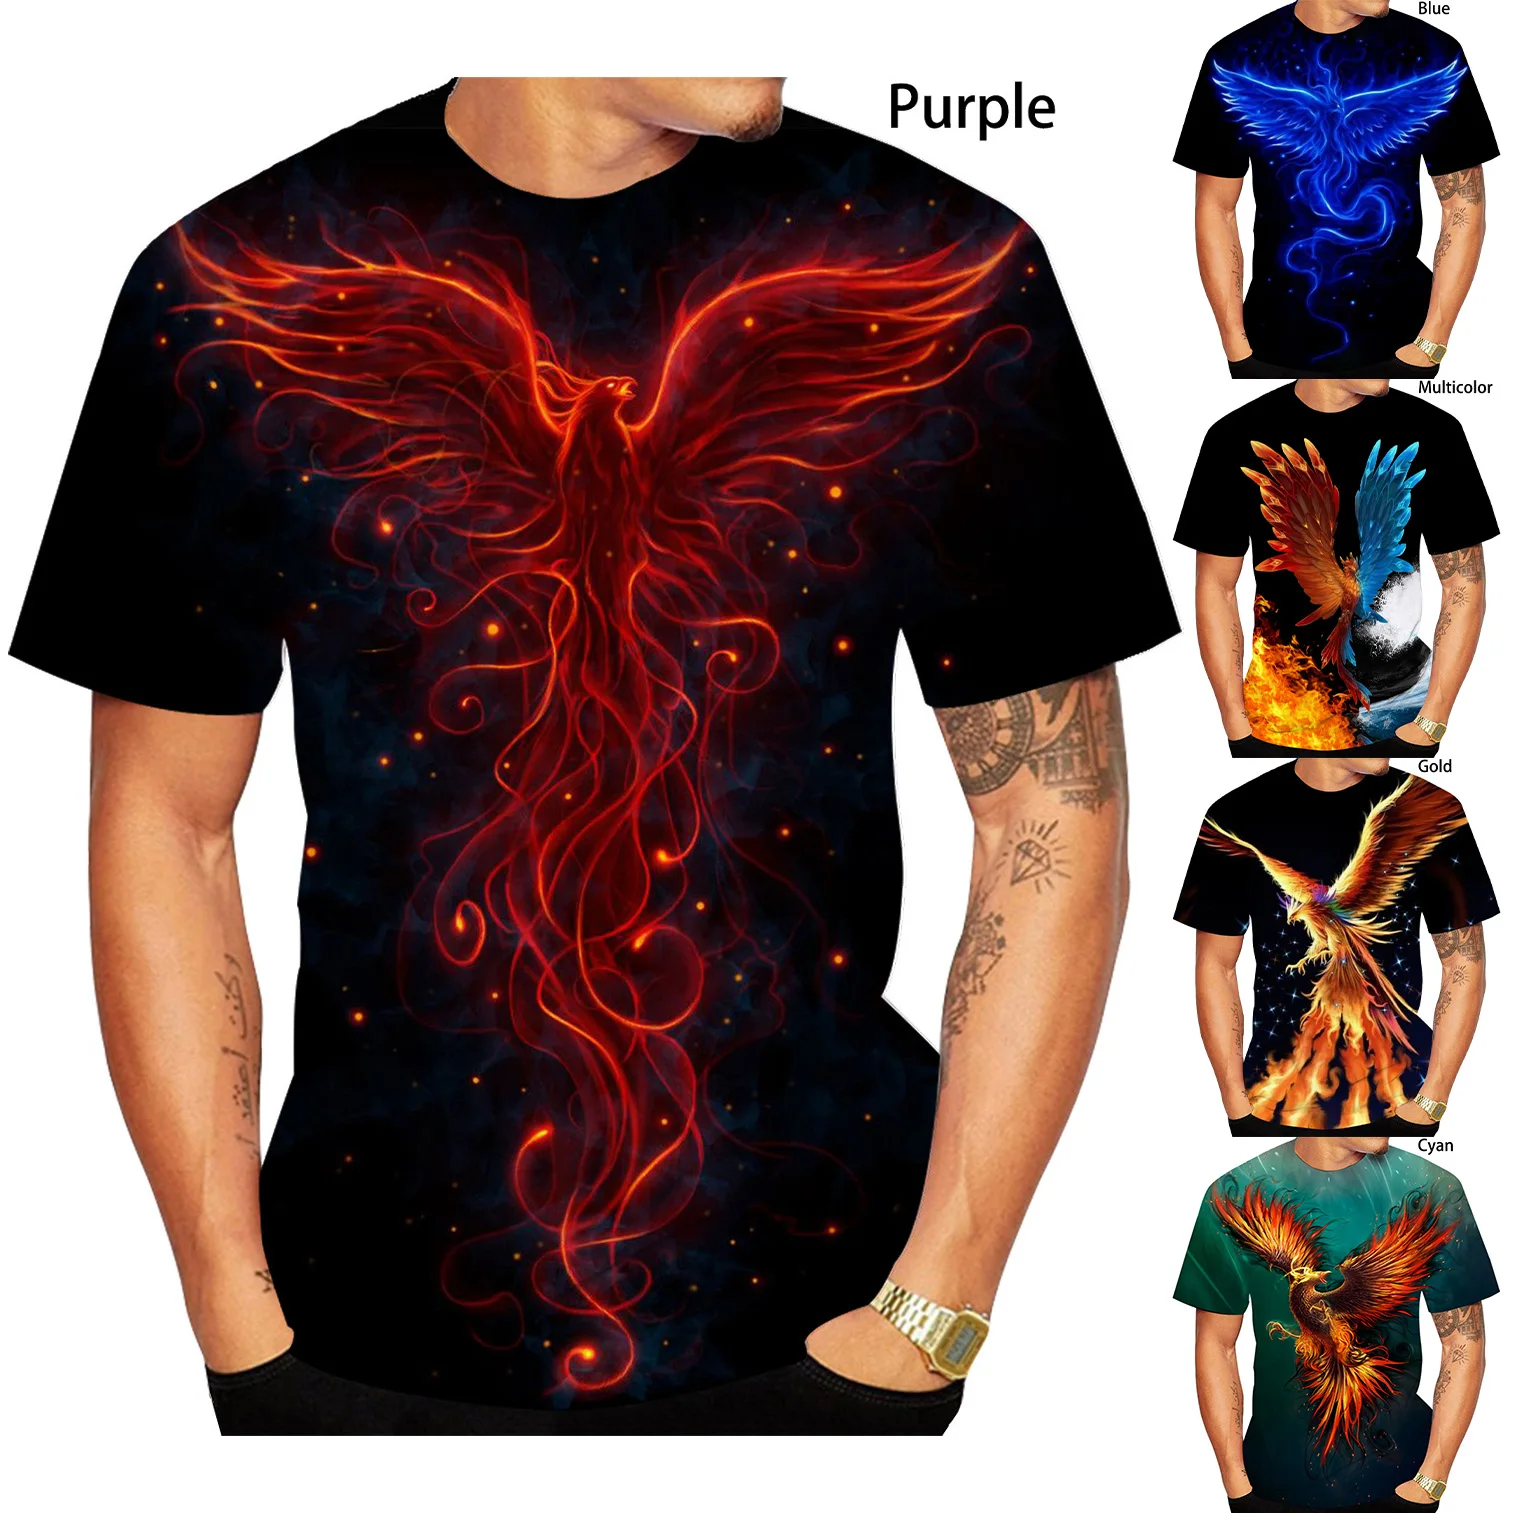 Yeni moda 3D baskı Phoenix Phoenix T Shirt serin güneş kuşlar kısa kollu tişört sıcak erkek/kadın TShirt Unisex yaz Tees